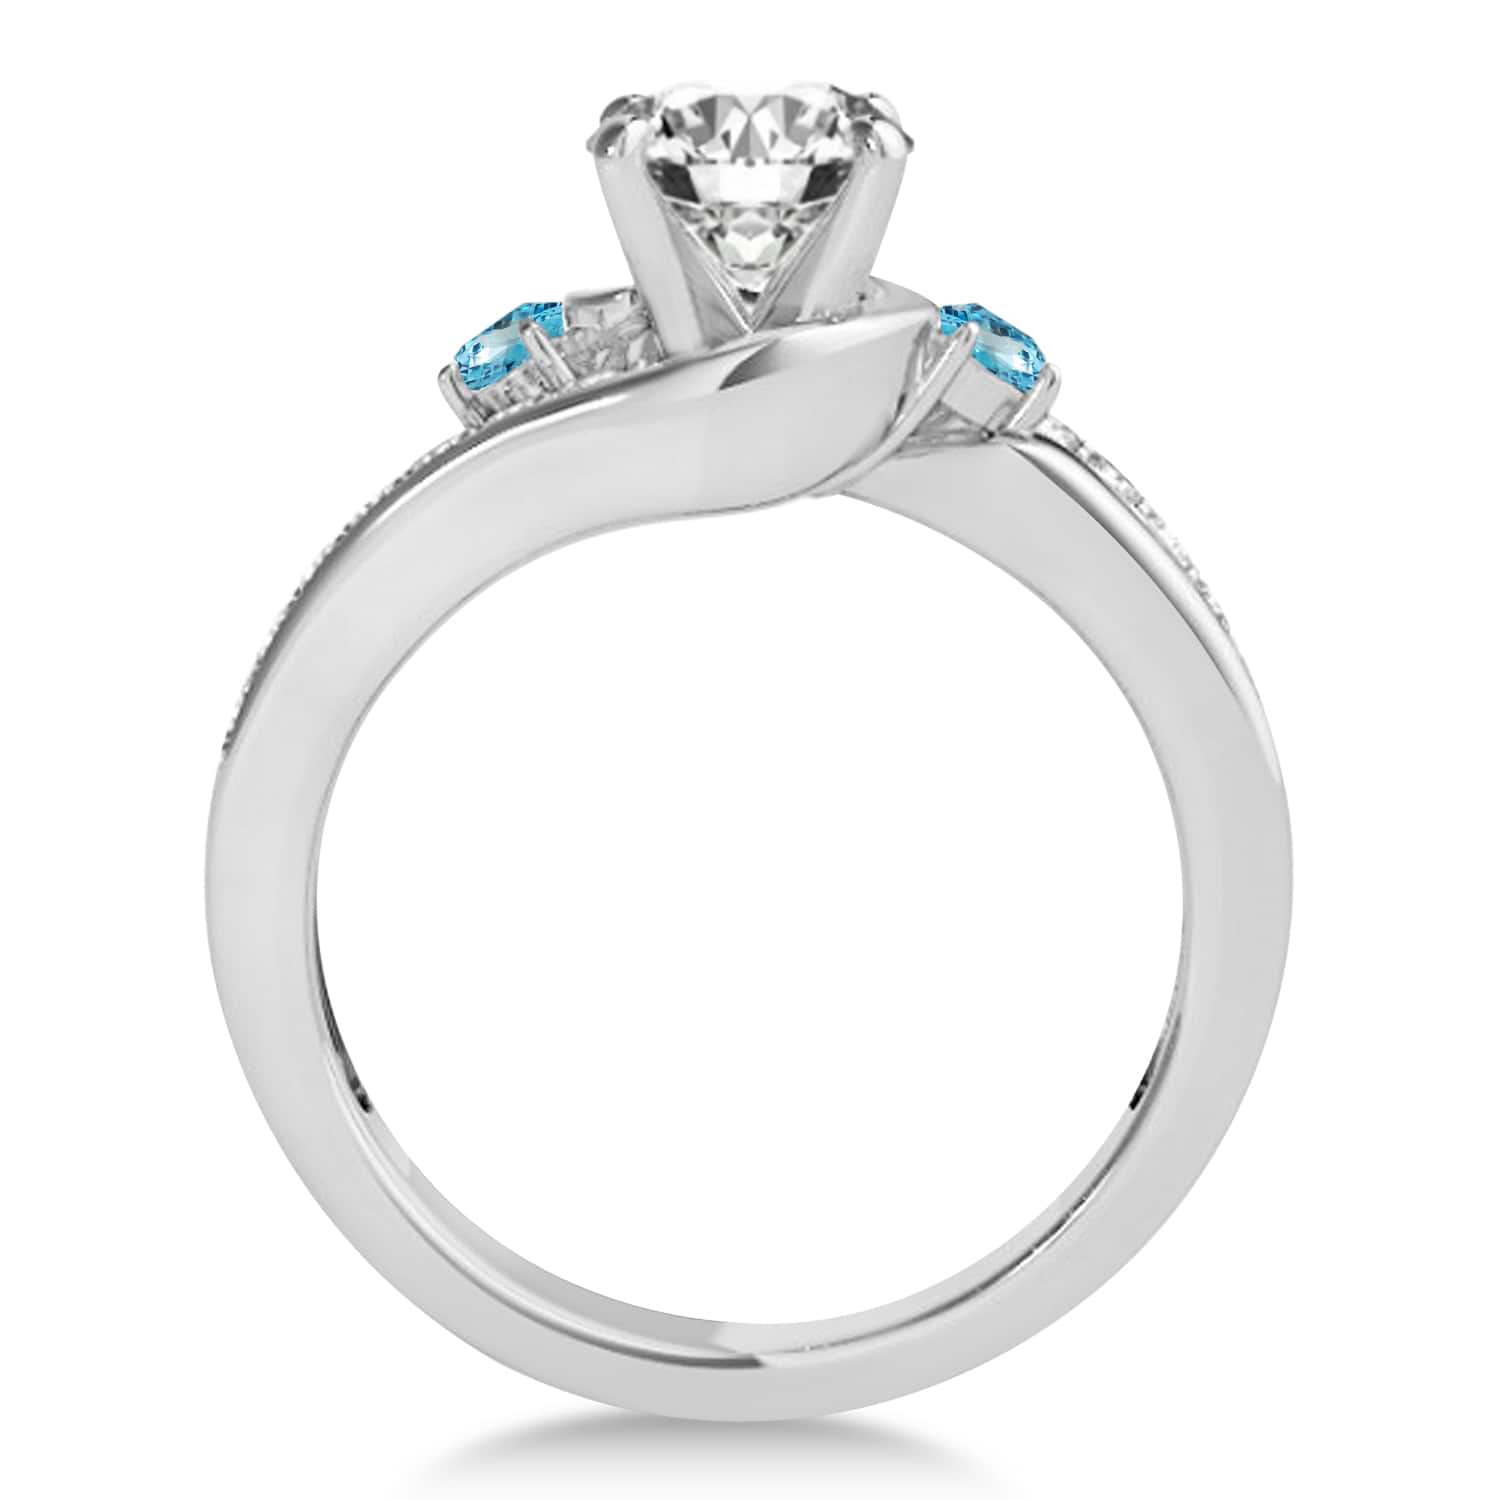 Swirl Design Blue Topaz & Diamond Engagement Ring Setting 18k White Gold 0.38ct